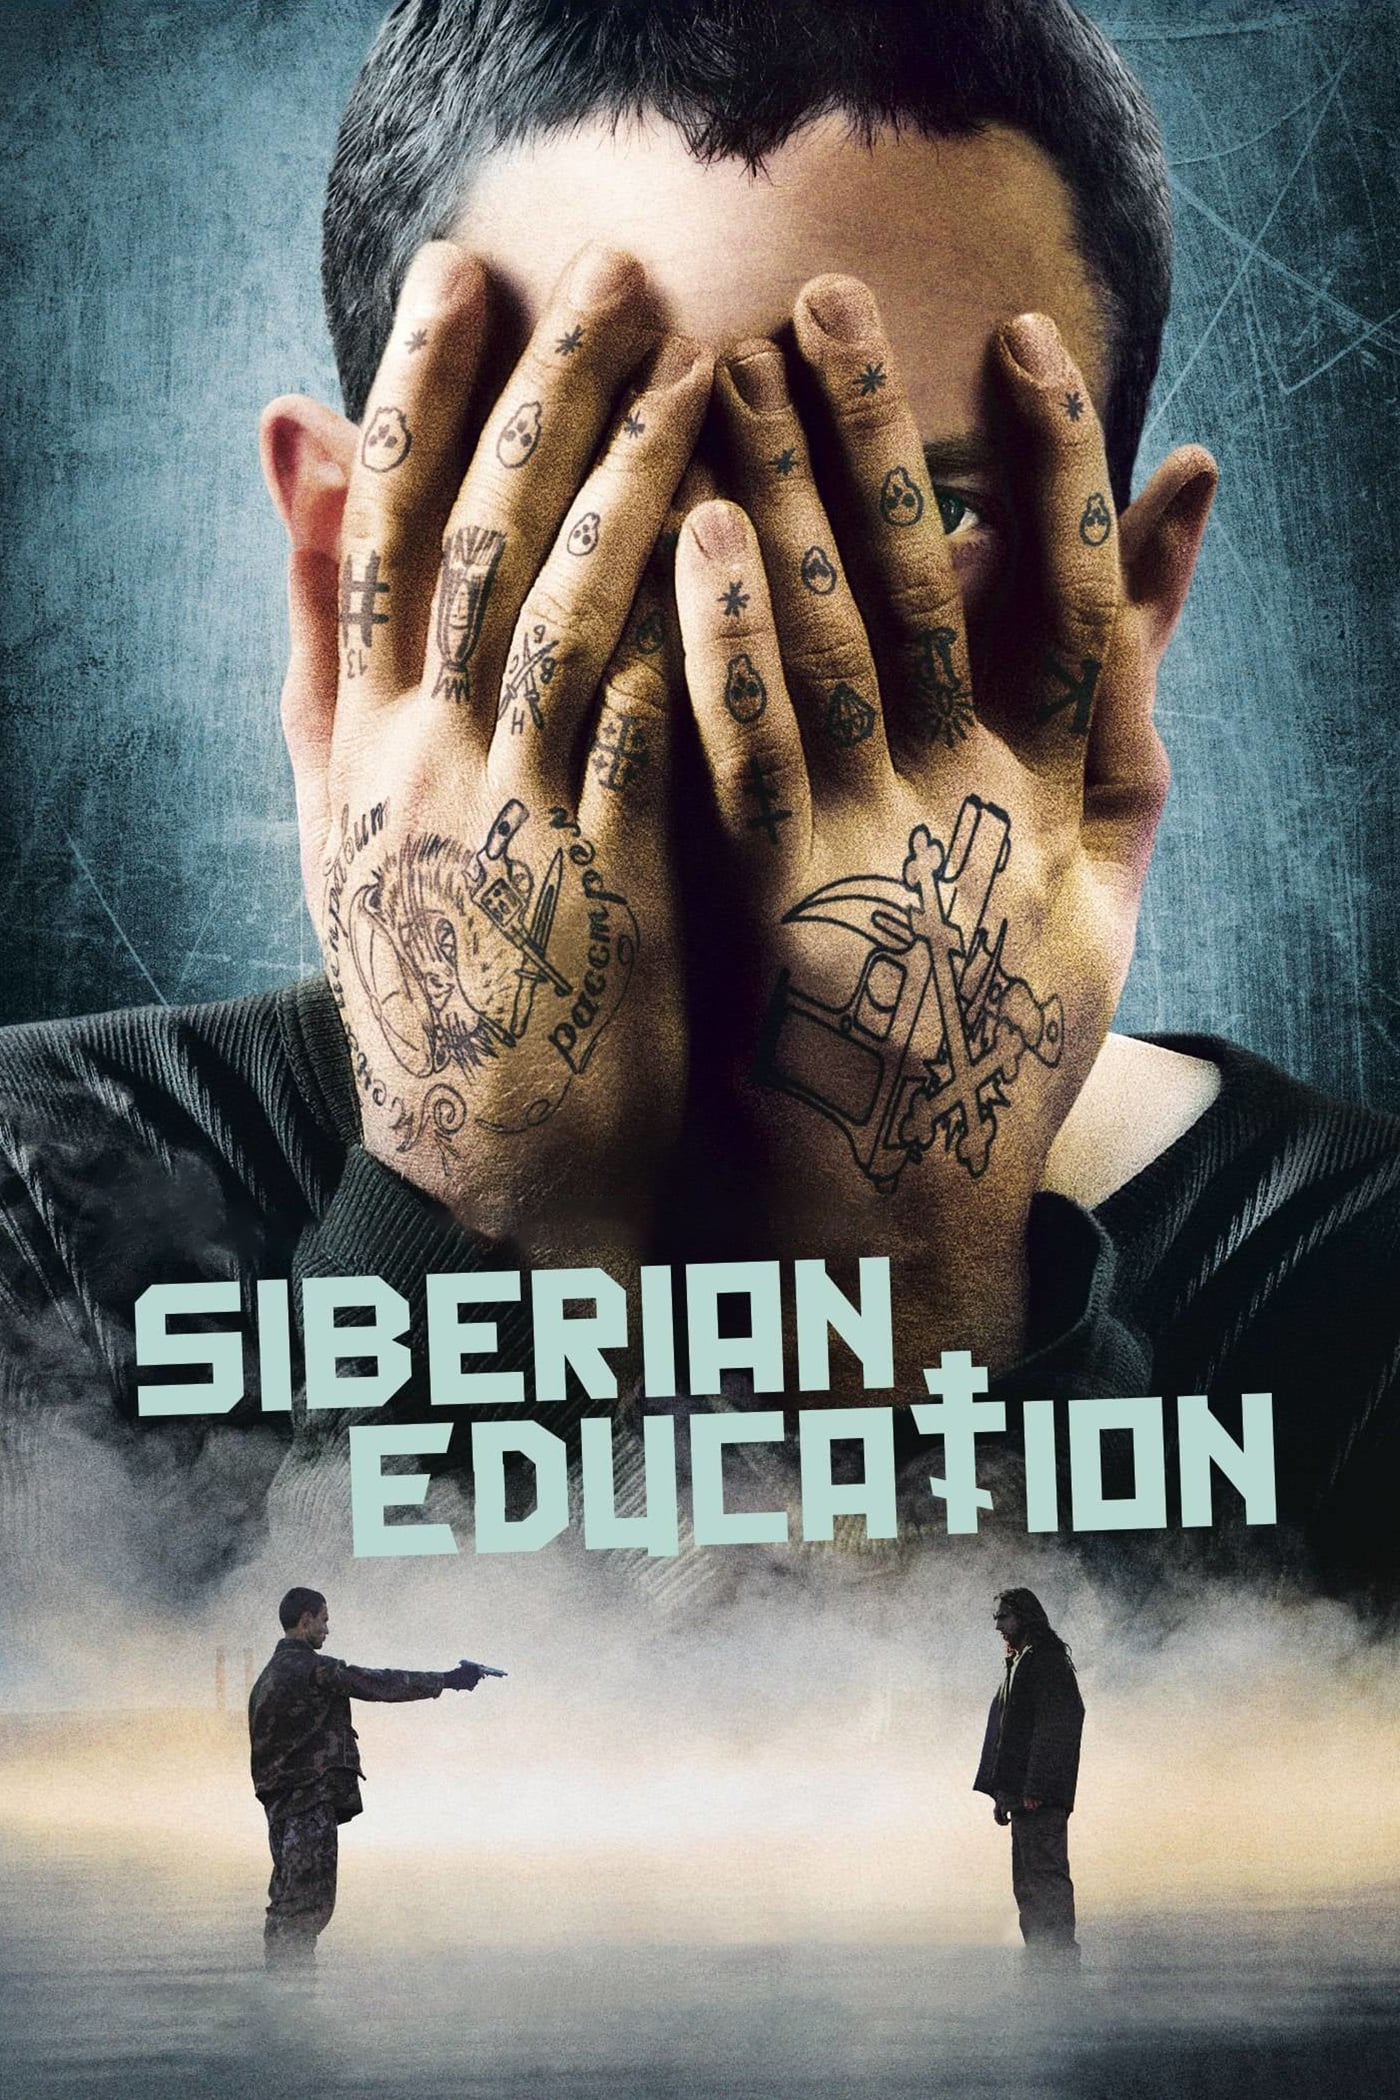 Caratula de Educazione siberiana (Educación siberiana) 